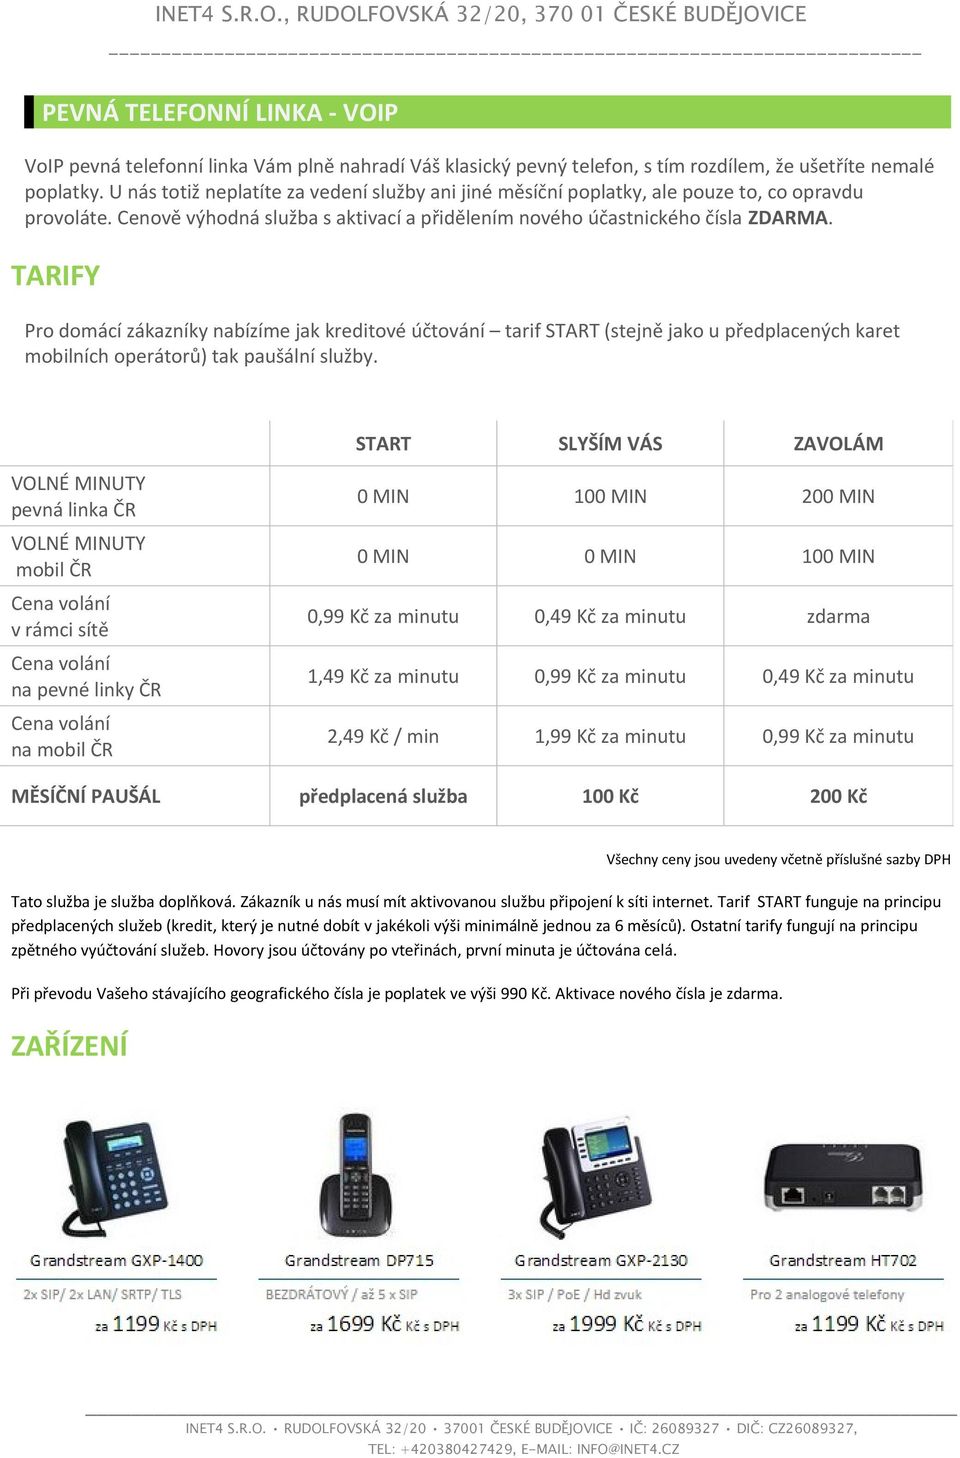 TARIFY Pro domácí zákazníky nabízíme jak kreditové účtování tarif START (stejně jako u předplacených karet mobilních operátorů) tak paušální služby.